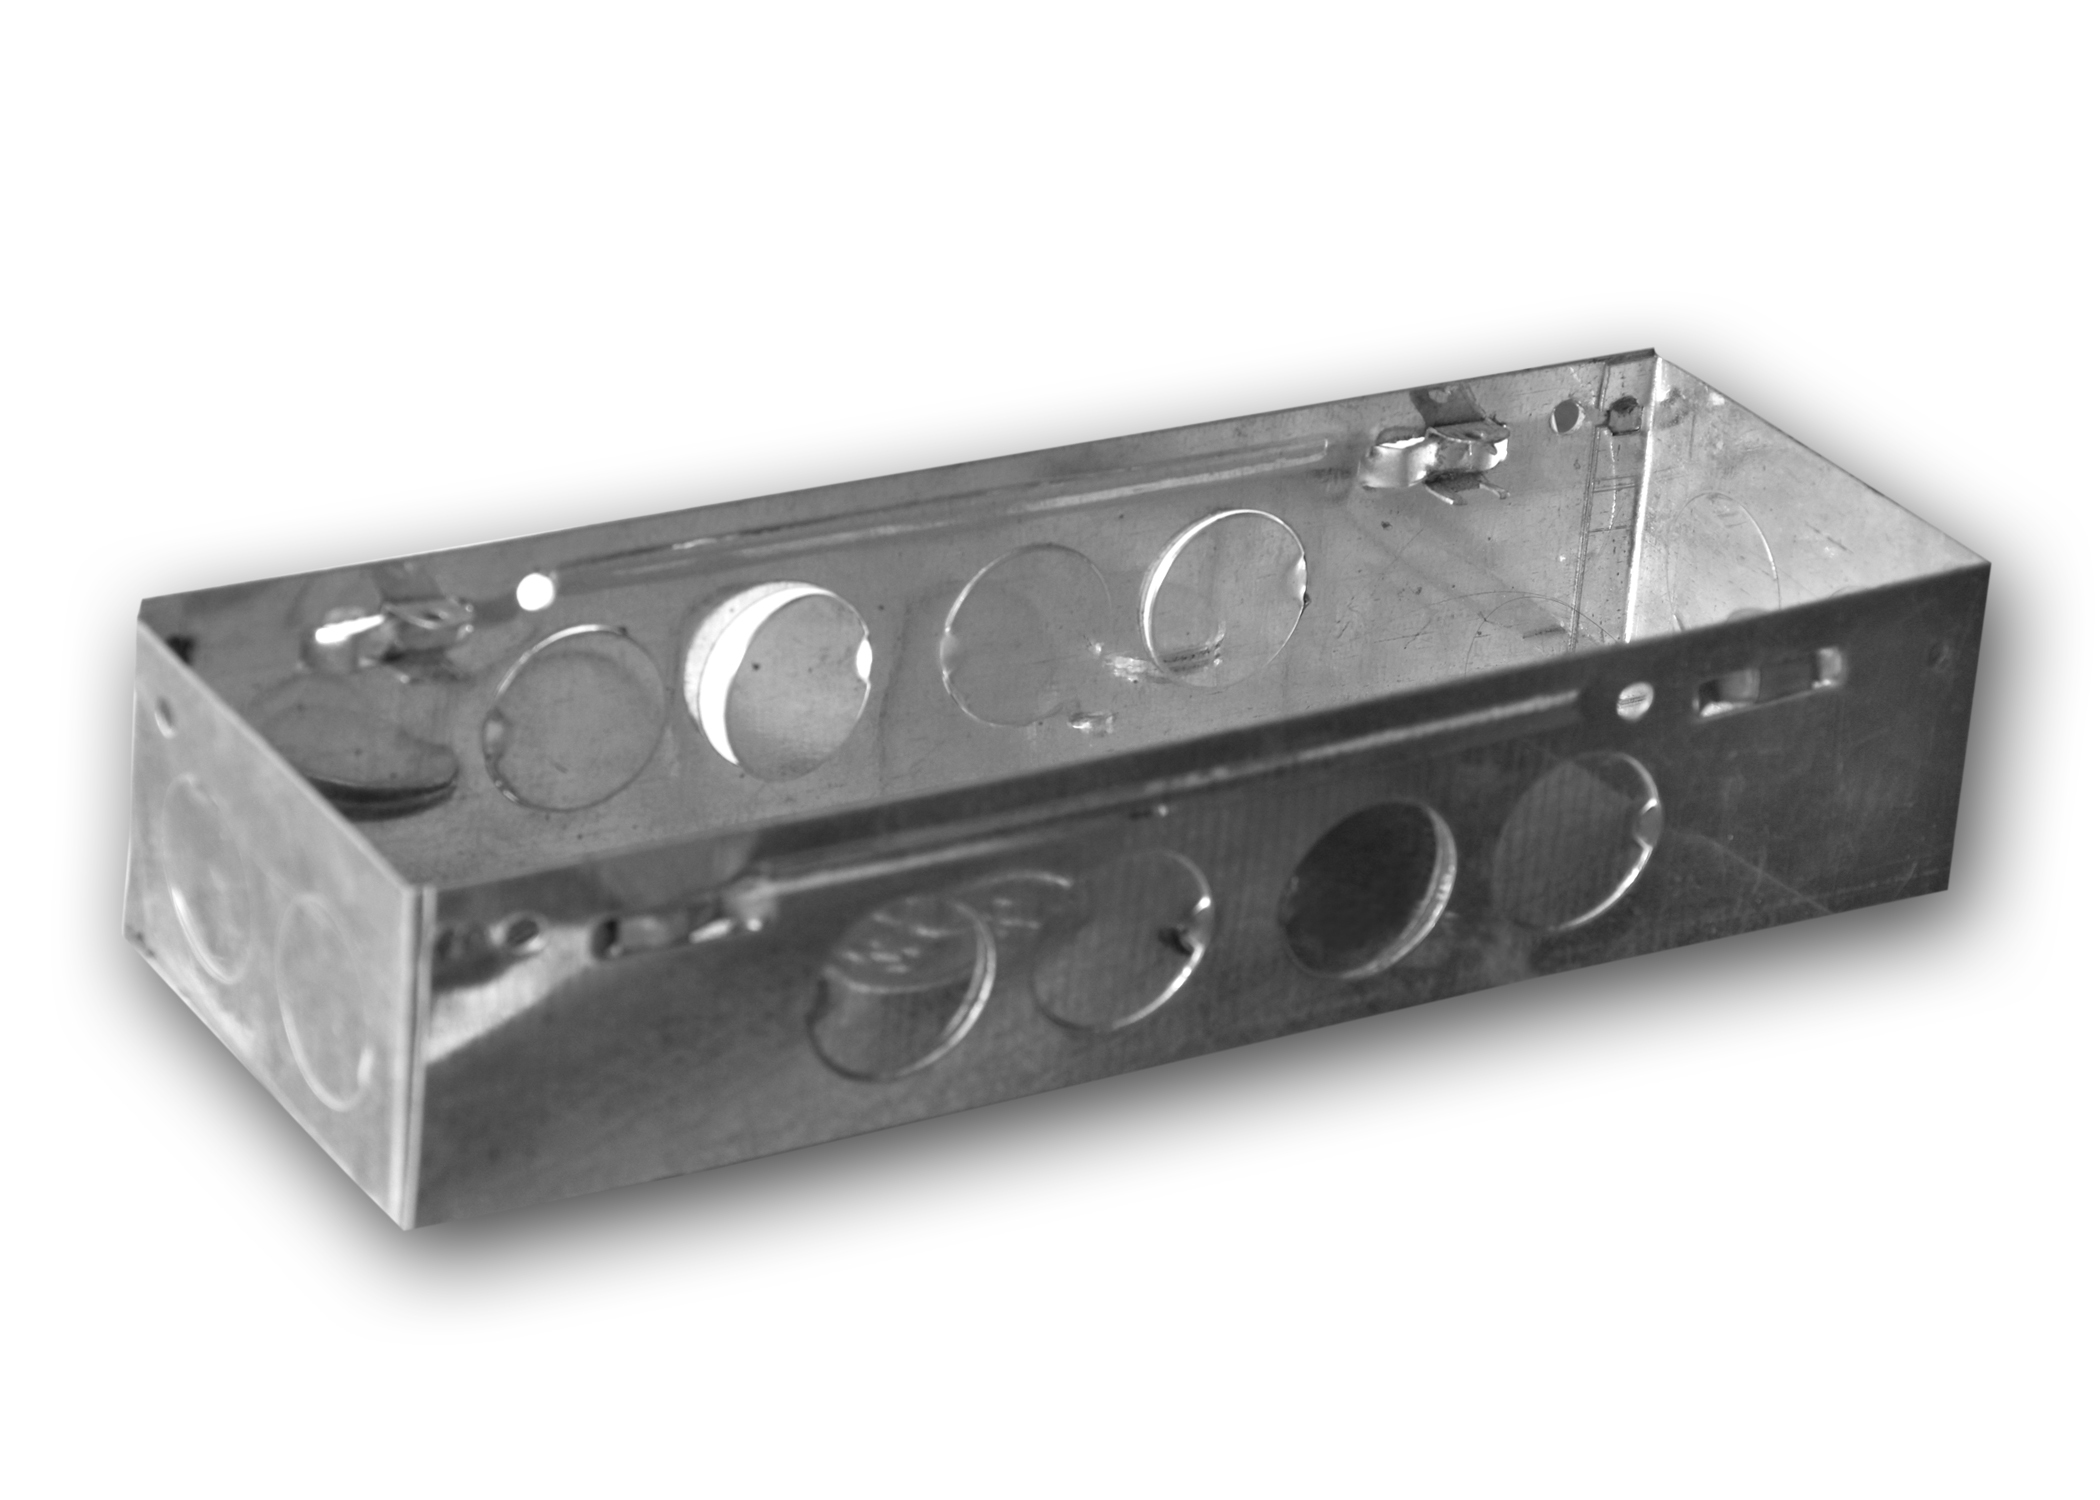 MS Metal Modular Box